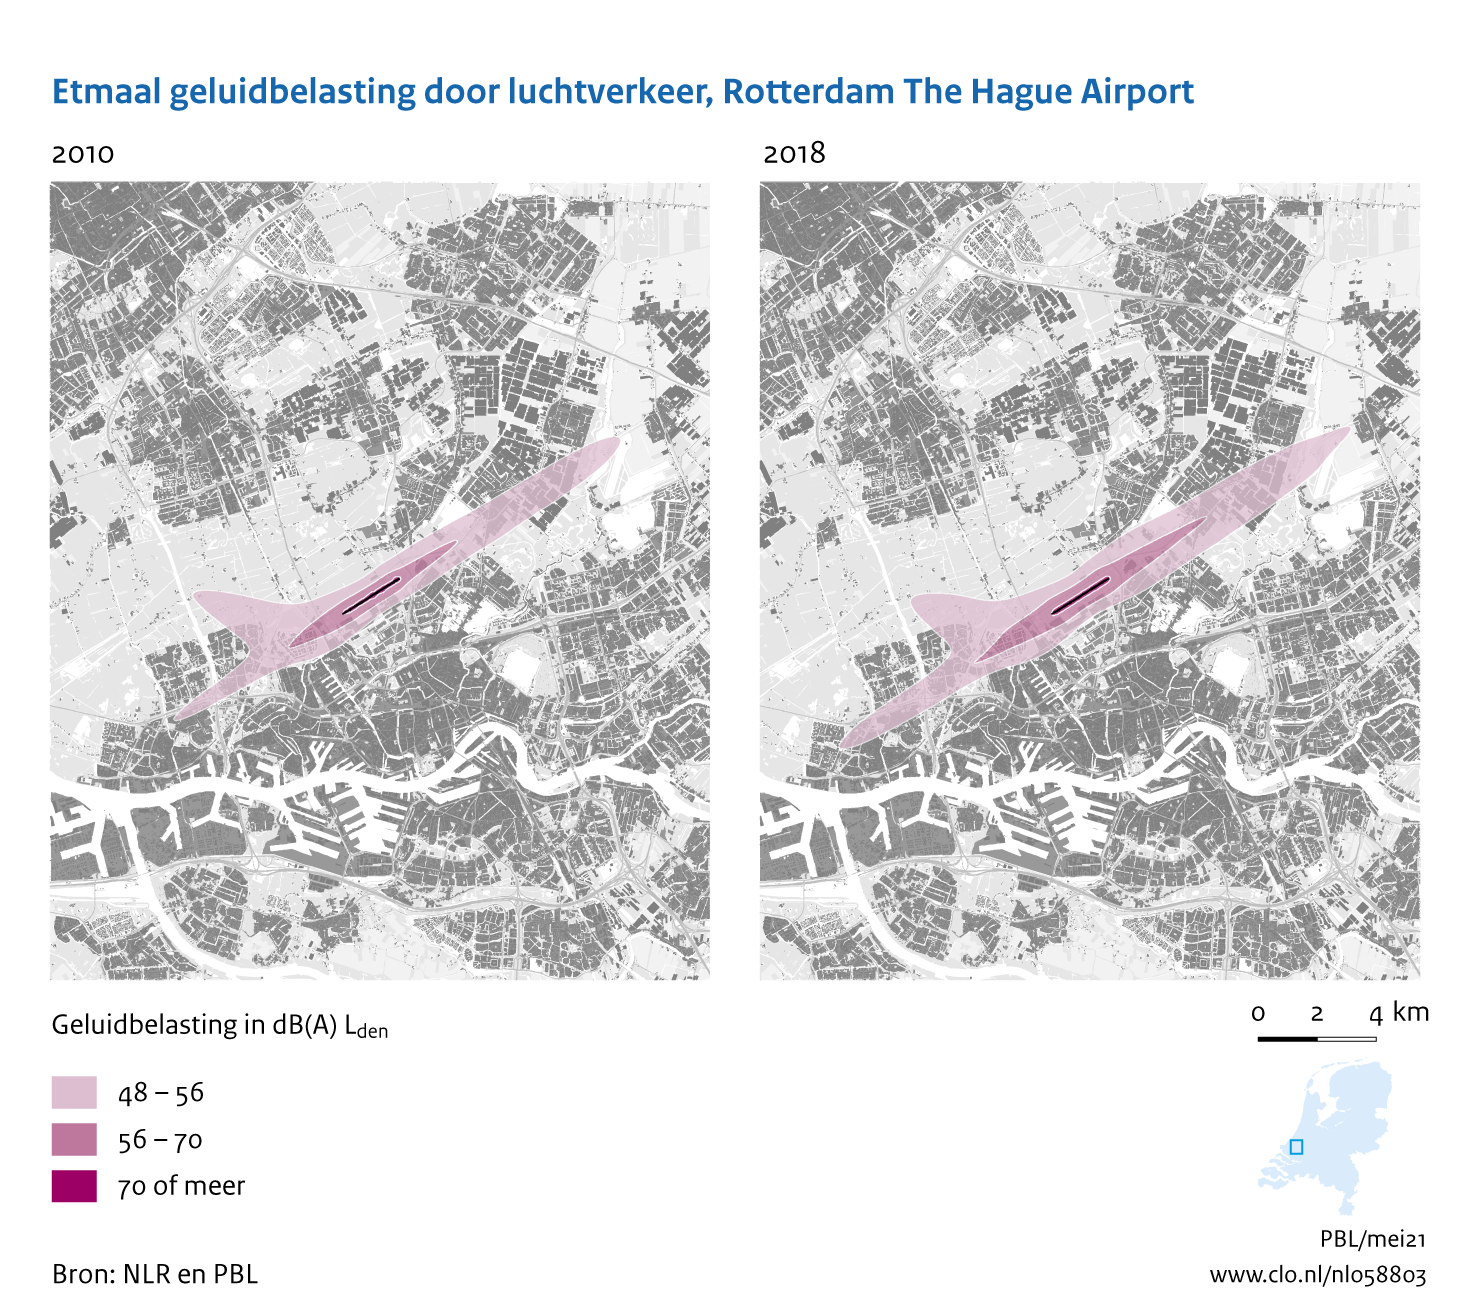 Figuur Etmaal geluidbelasting door luchtvaart, Rotterdam The Hague Airport, 2010-2018. In de rest van de tekst wordt deze figuur uitgebreider uitgelegd.